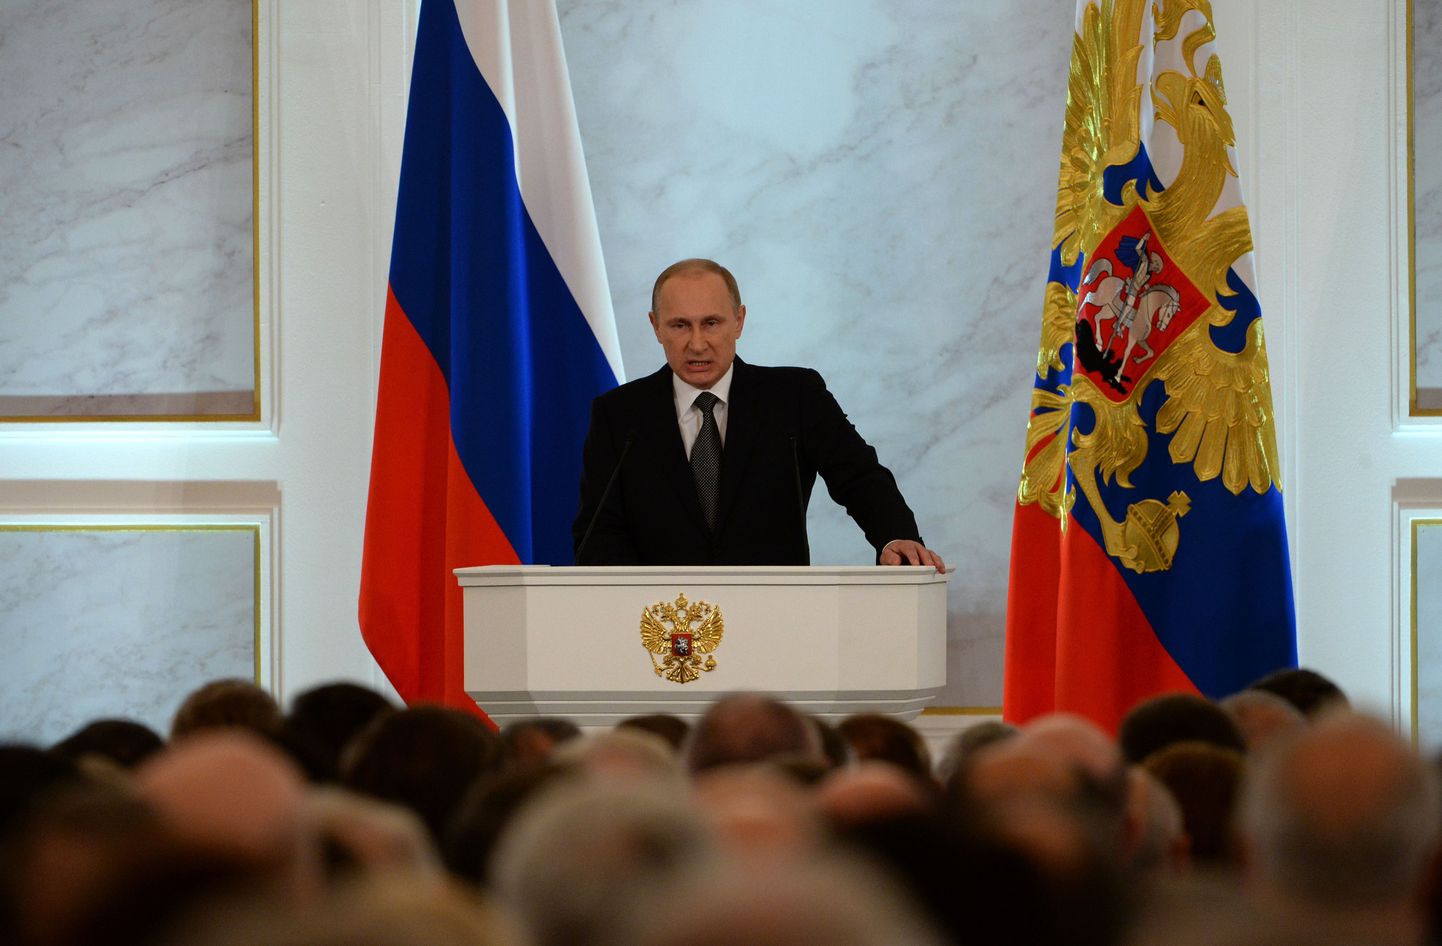 Venemaa president Vladimir Putin aastakõnet pidamas.